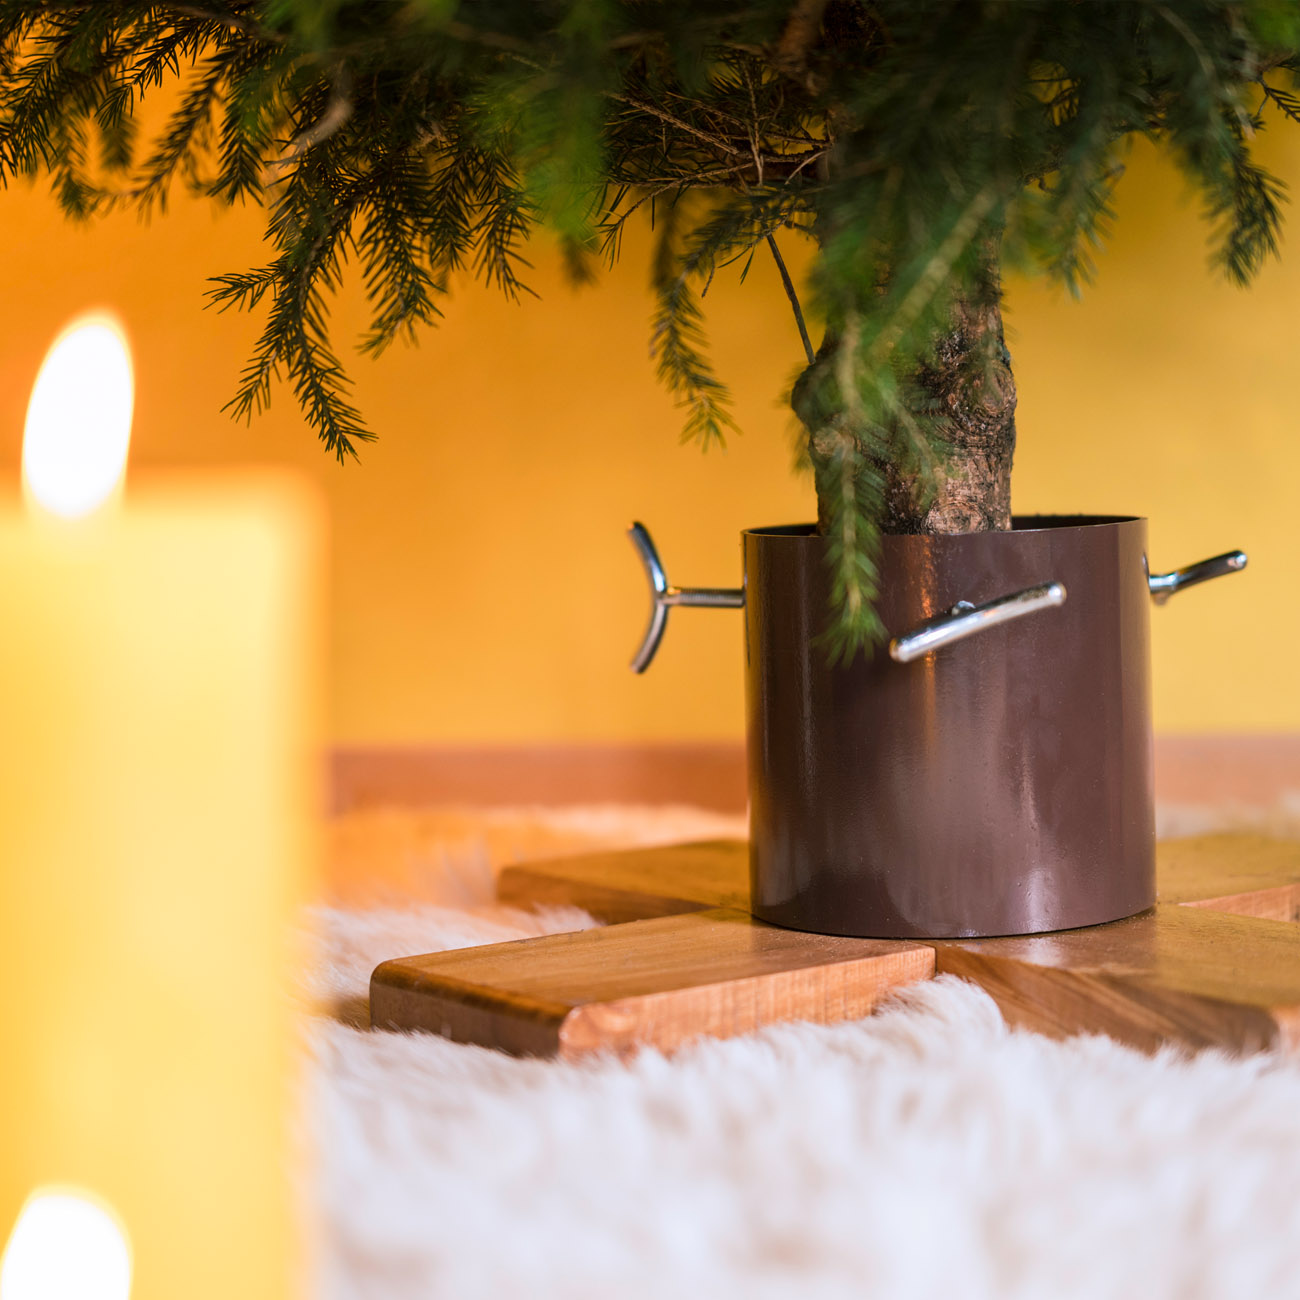 Wasserbehälter für 1,2l Wasser Baumhöhe bis 2,20m Stammdurchmesser 9,5cm in Silver-Gray Tree Nest Christbaumständer Rustic Design Christmas aus hochwertigem Holz und Metall